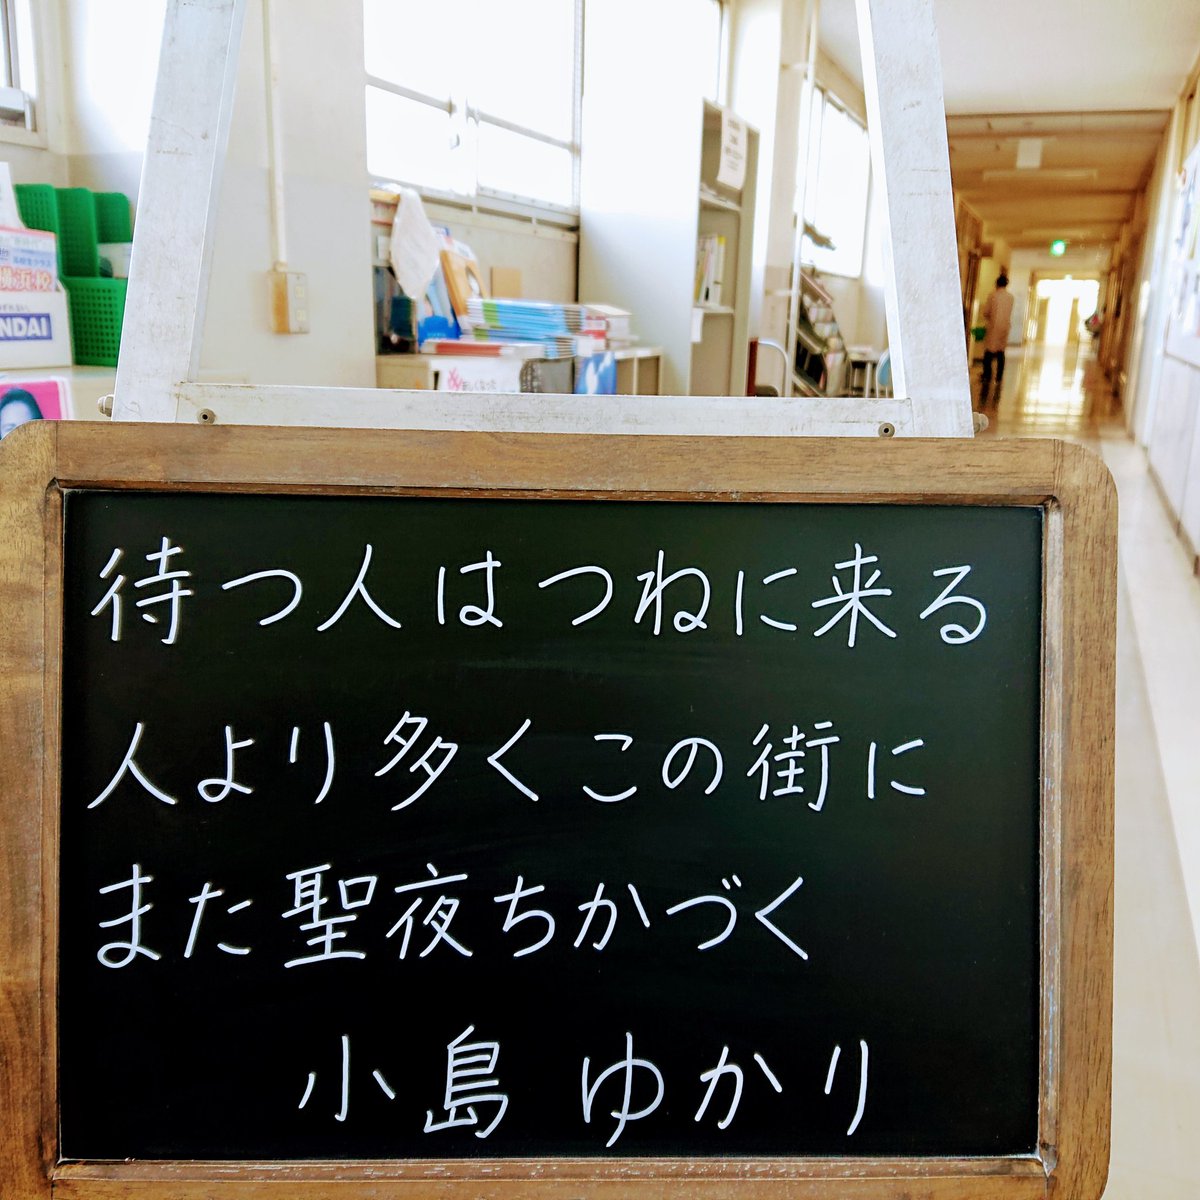 クリスマスの名歌をお送りします。みなさん、どうかあたたかくしてお過ごしください。横浜サイエンスフロンティア高校・中学校の小さな黒板(これは桜丘高校のときのもの)。小島ゆかり。